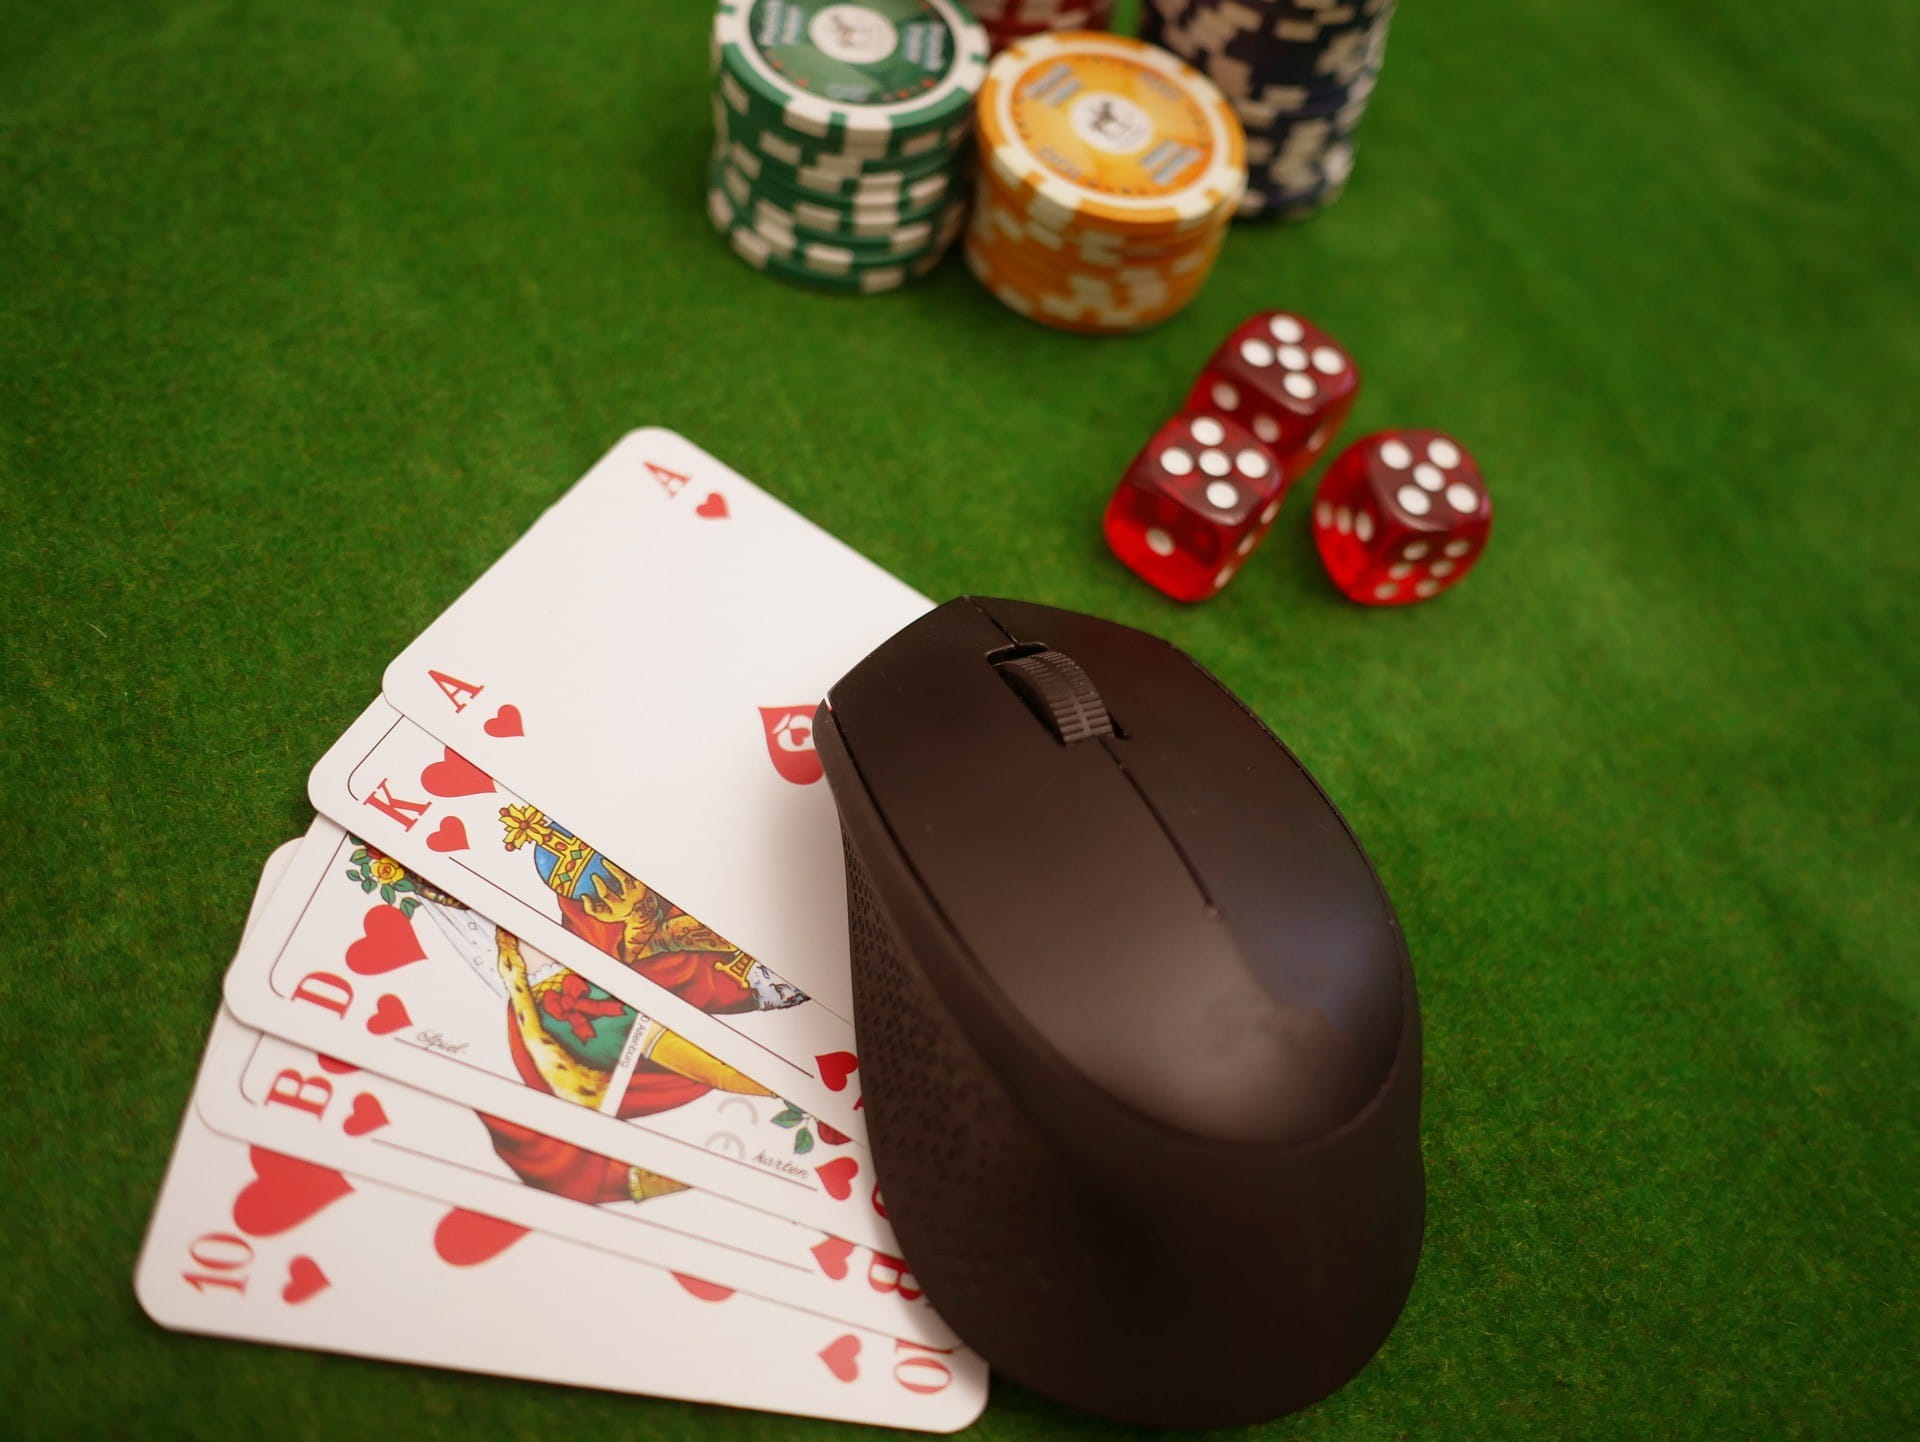 Lima kartu poker dan beberapa chip bermain dengan warna berbeda terletak di atas meja.